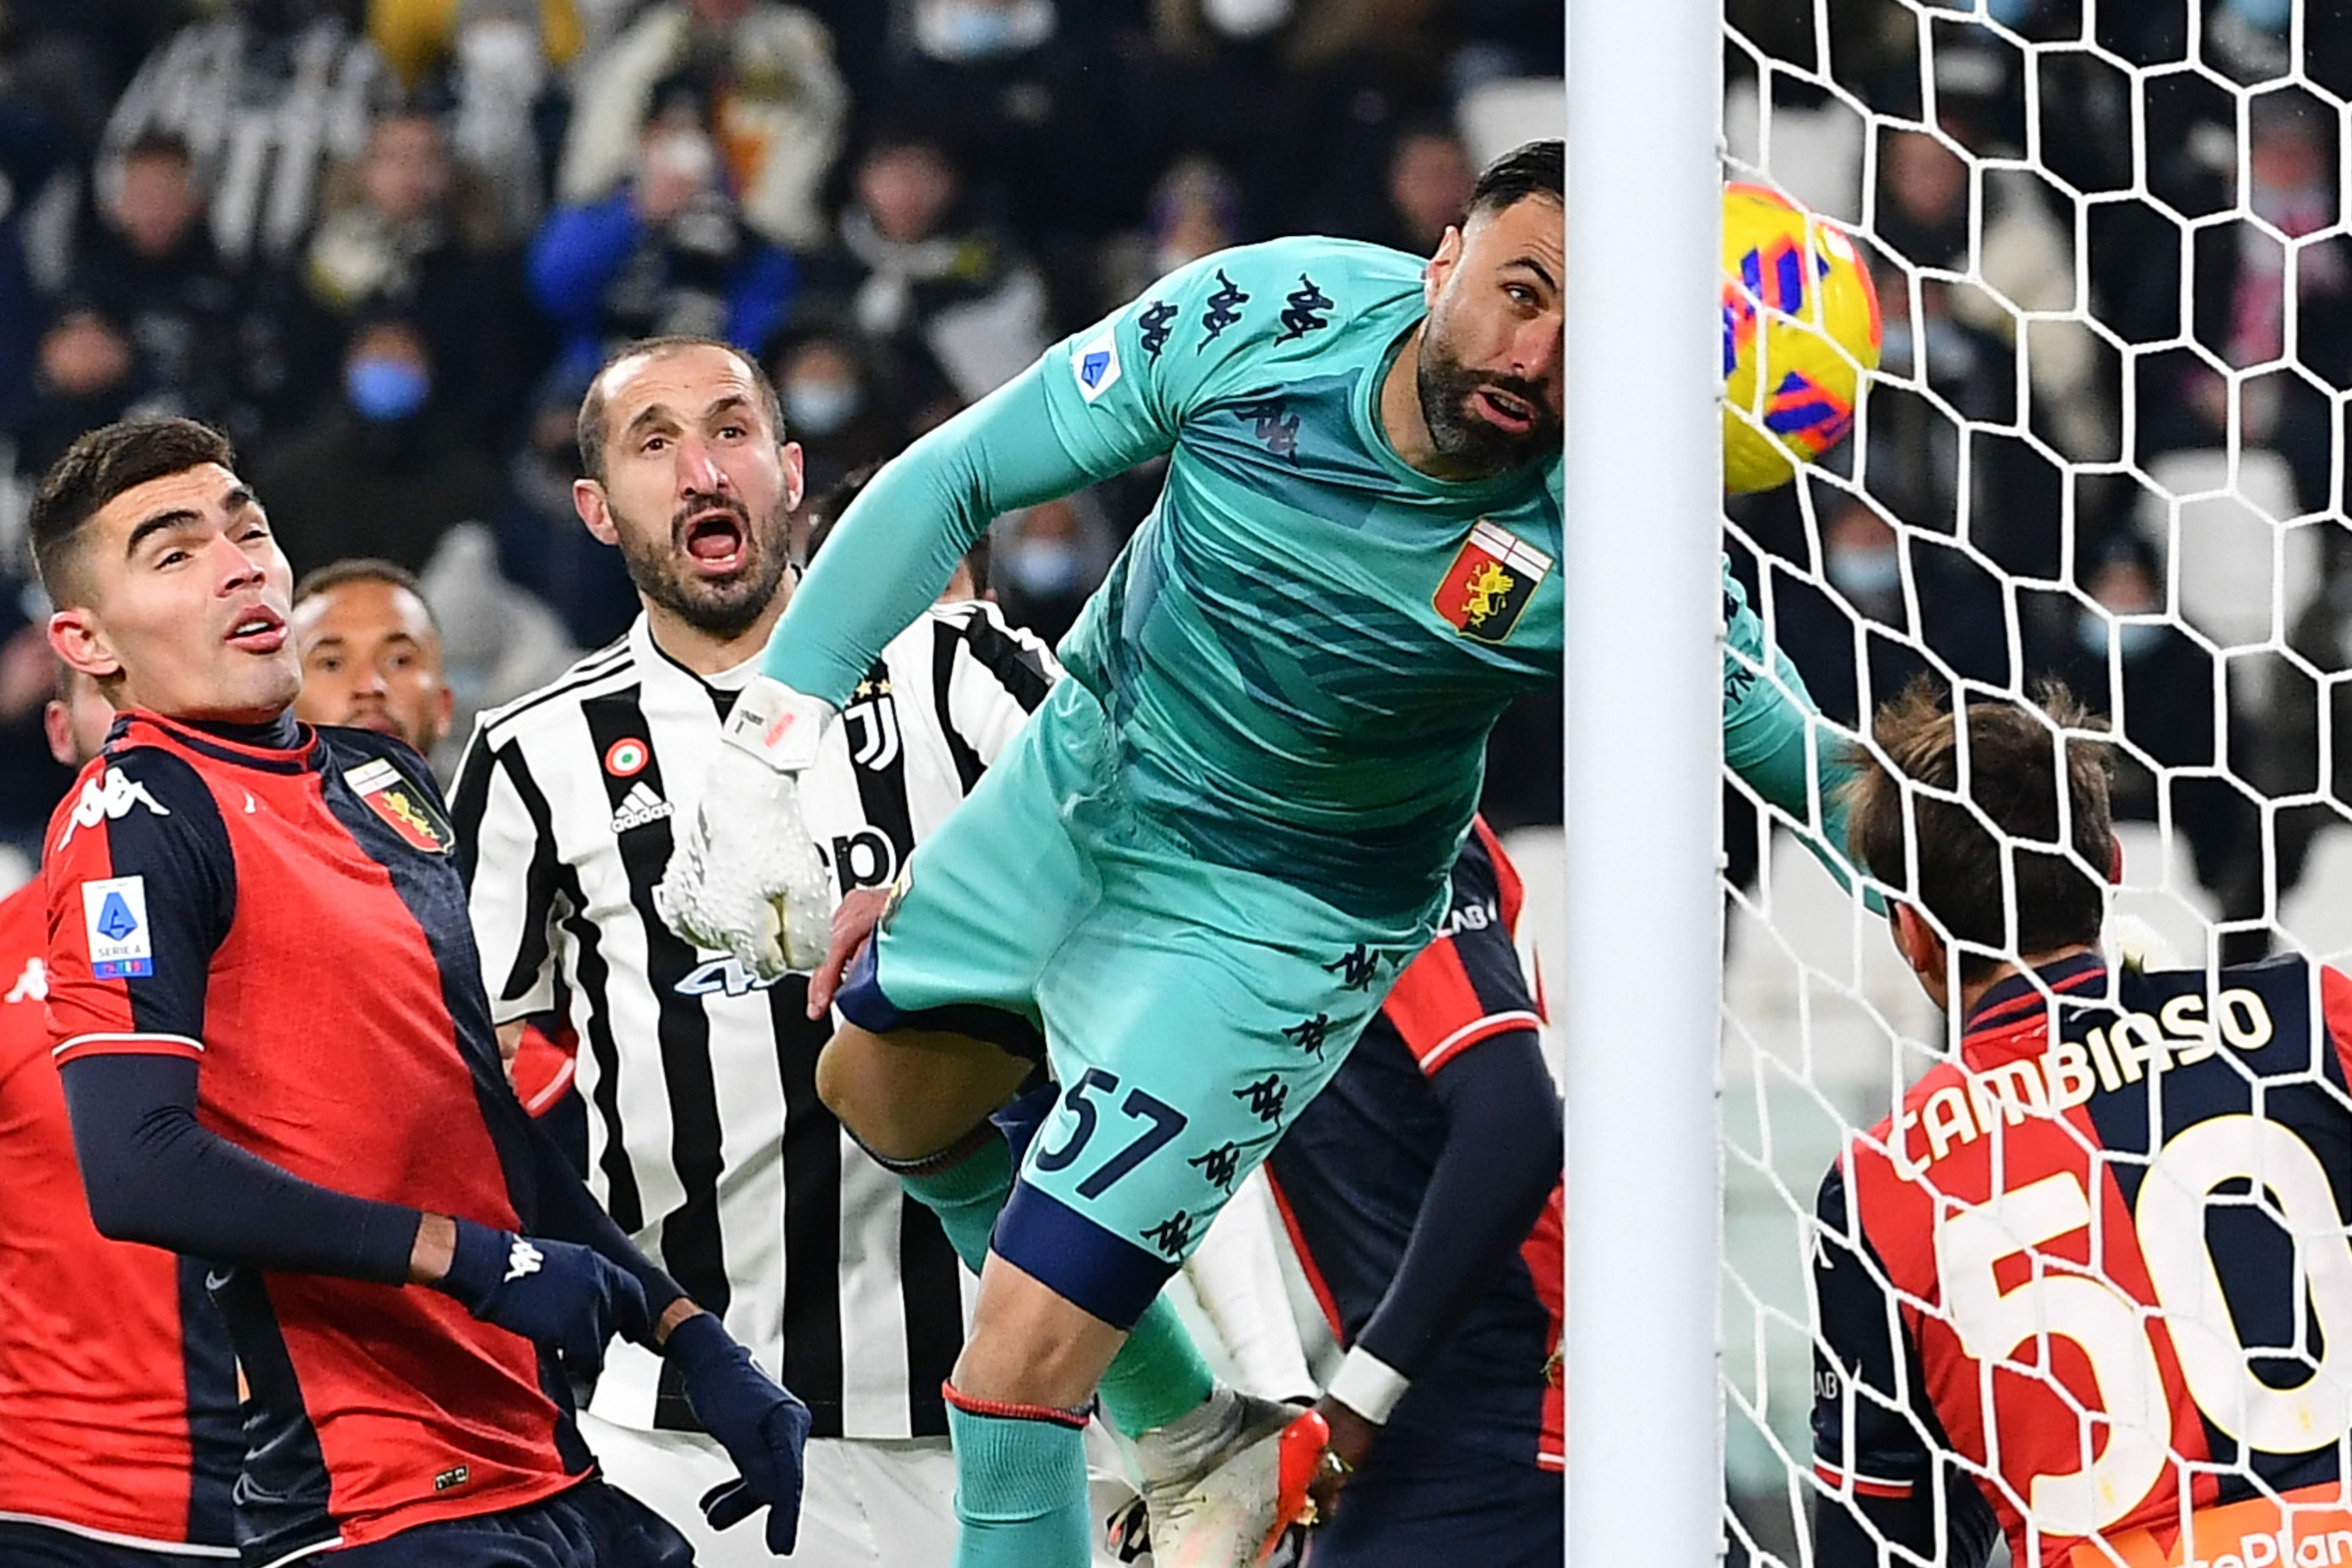 El defensa del Genoa Johan Vazquez, junto al zaguero de Juventus Giorgio Chiellini enfrentándose el 5 de diciembre. (Foto Prensa Libre: AFP)